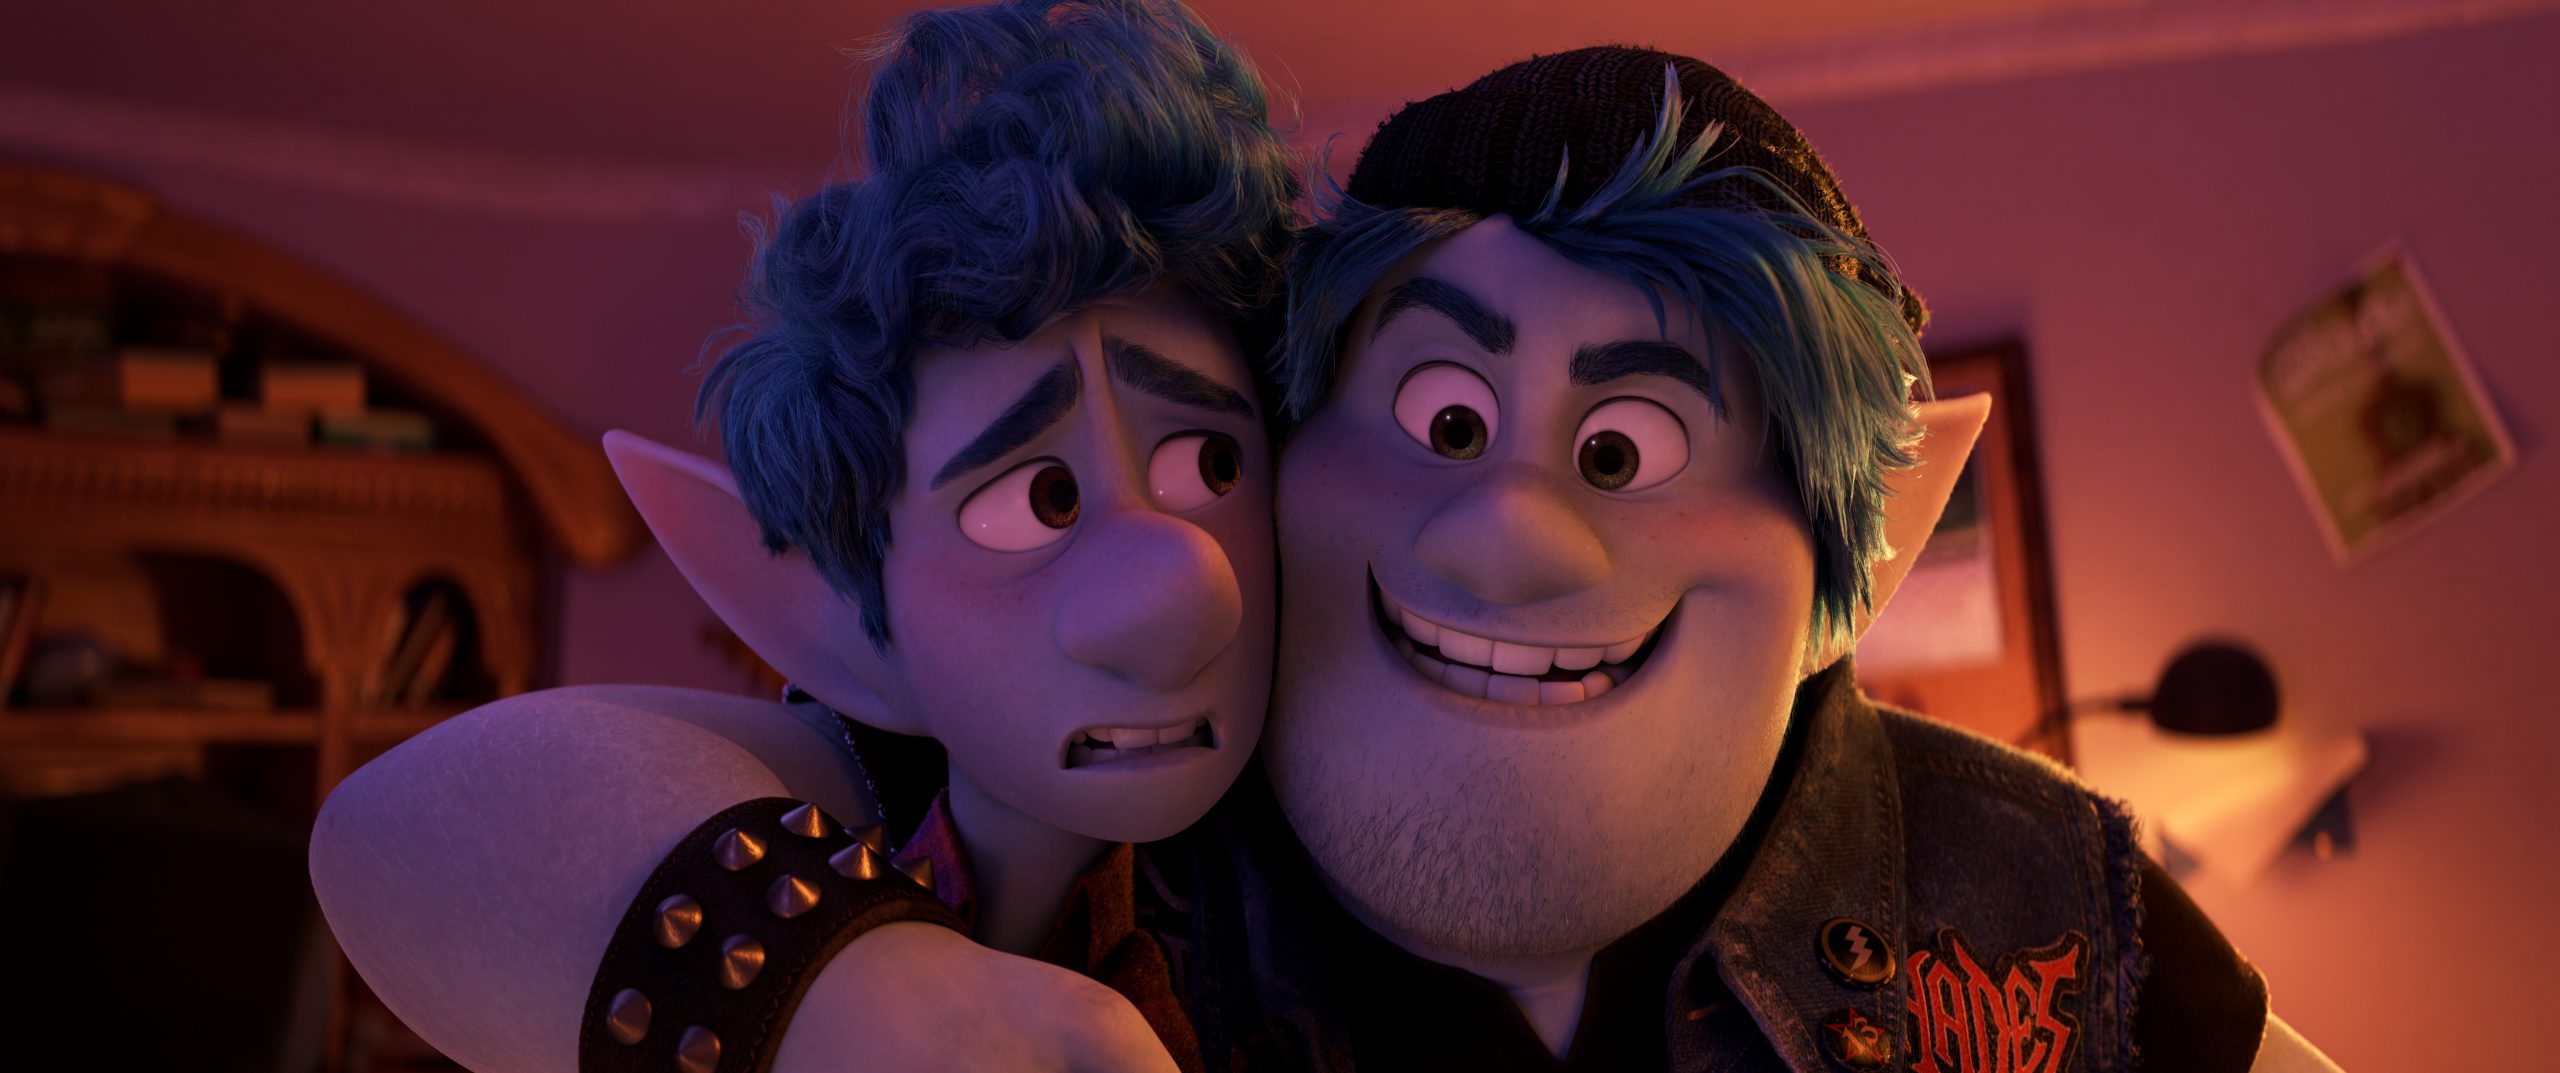 De två animerade alfbröderna från filmen Framåt.  © Disney Pixar